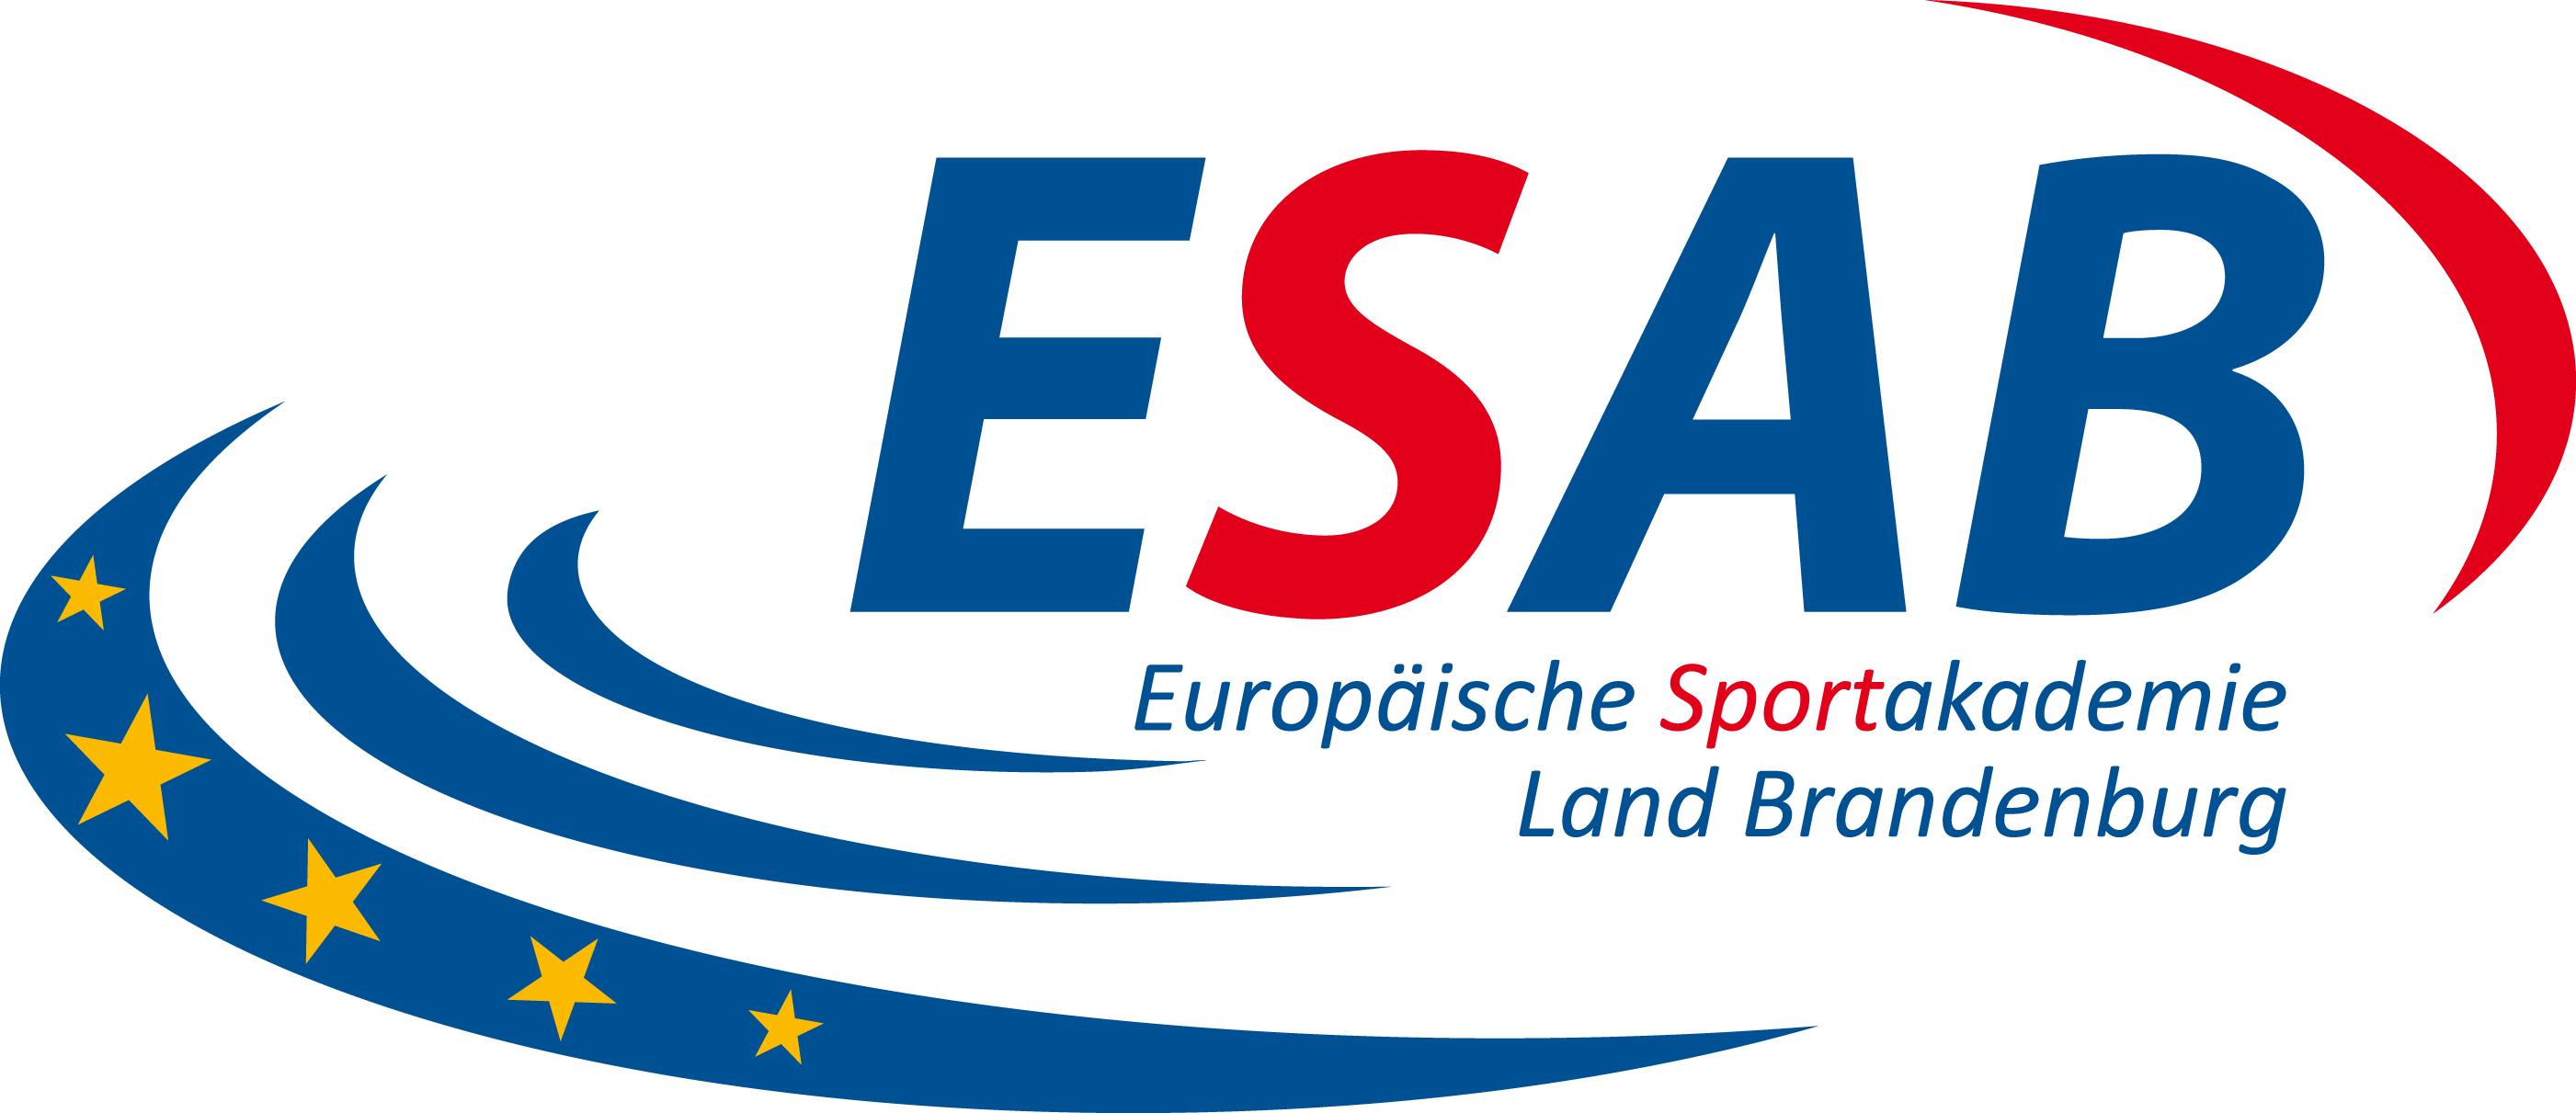 Europäische Sportakademie Land Brandenburg